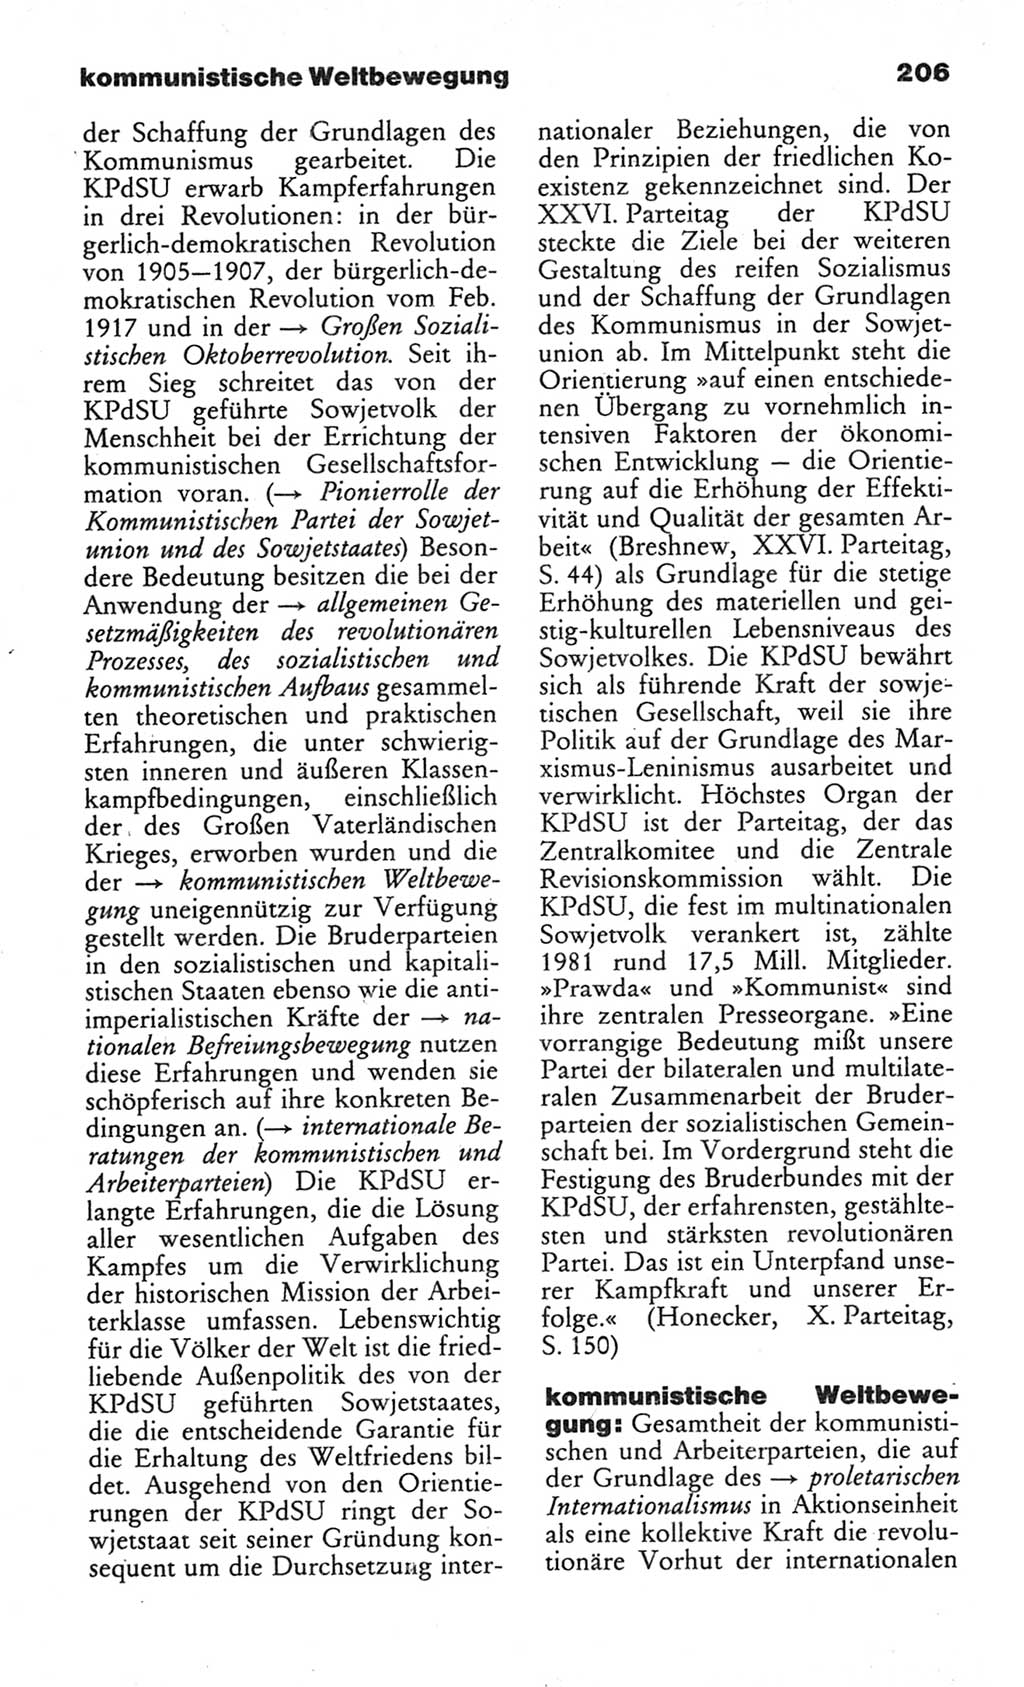 Wörterbuch des wissenschaftlichen Kommunismus [Deutsche Demokratische Republik (DDR)] 1982, Seite 206 (Wb. wiss. Komm. DDR 1982, S. 206)